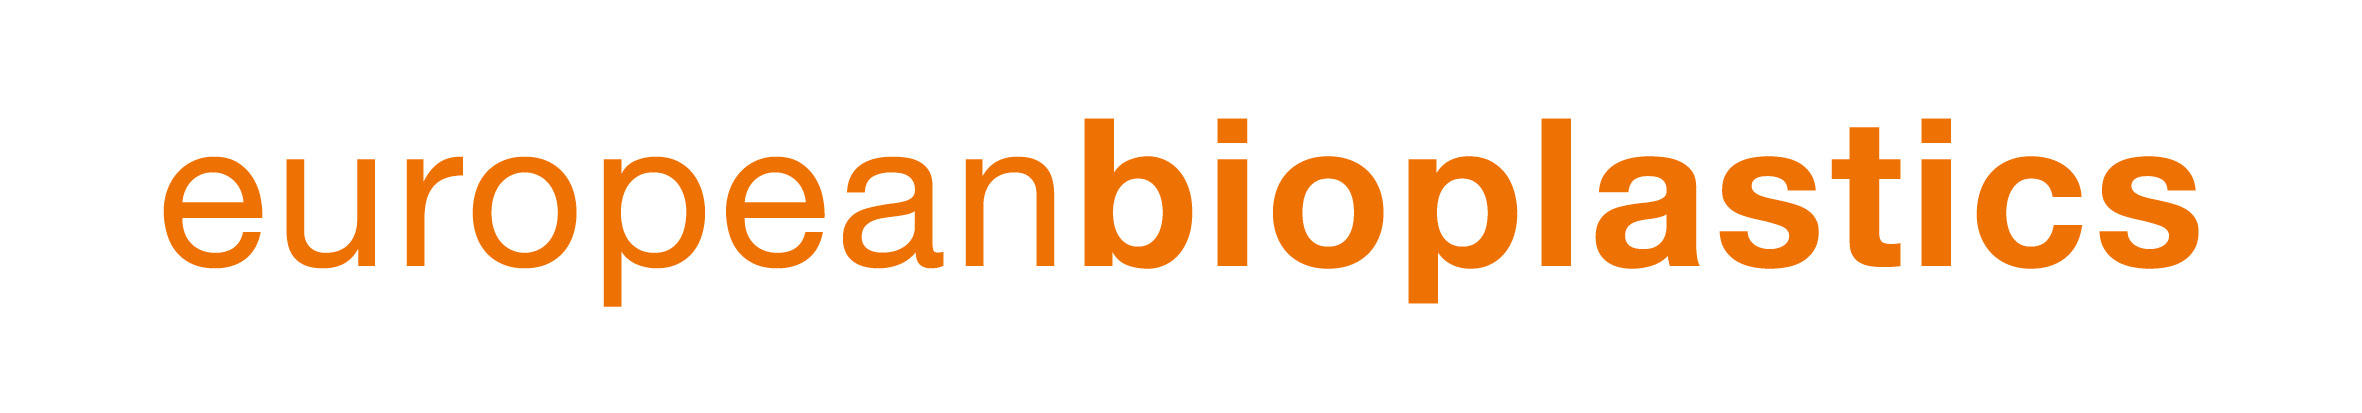 EUBP_Logotype_orange.jpg